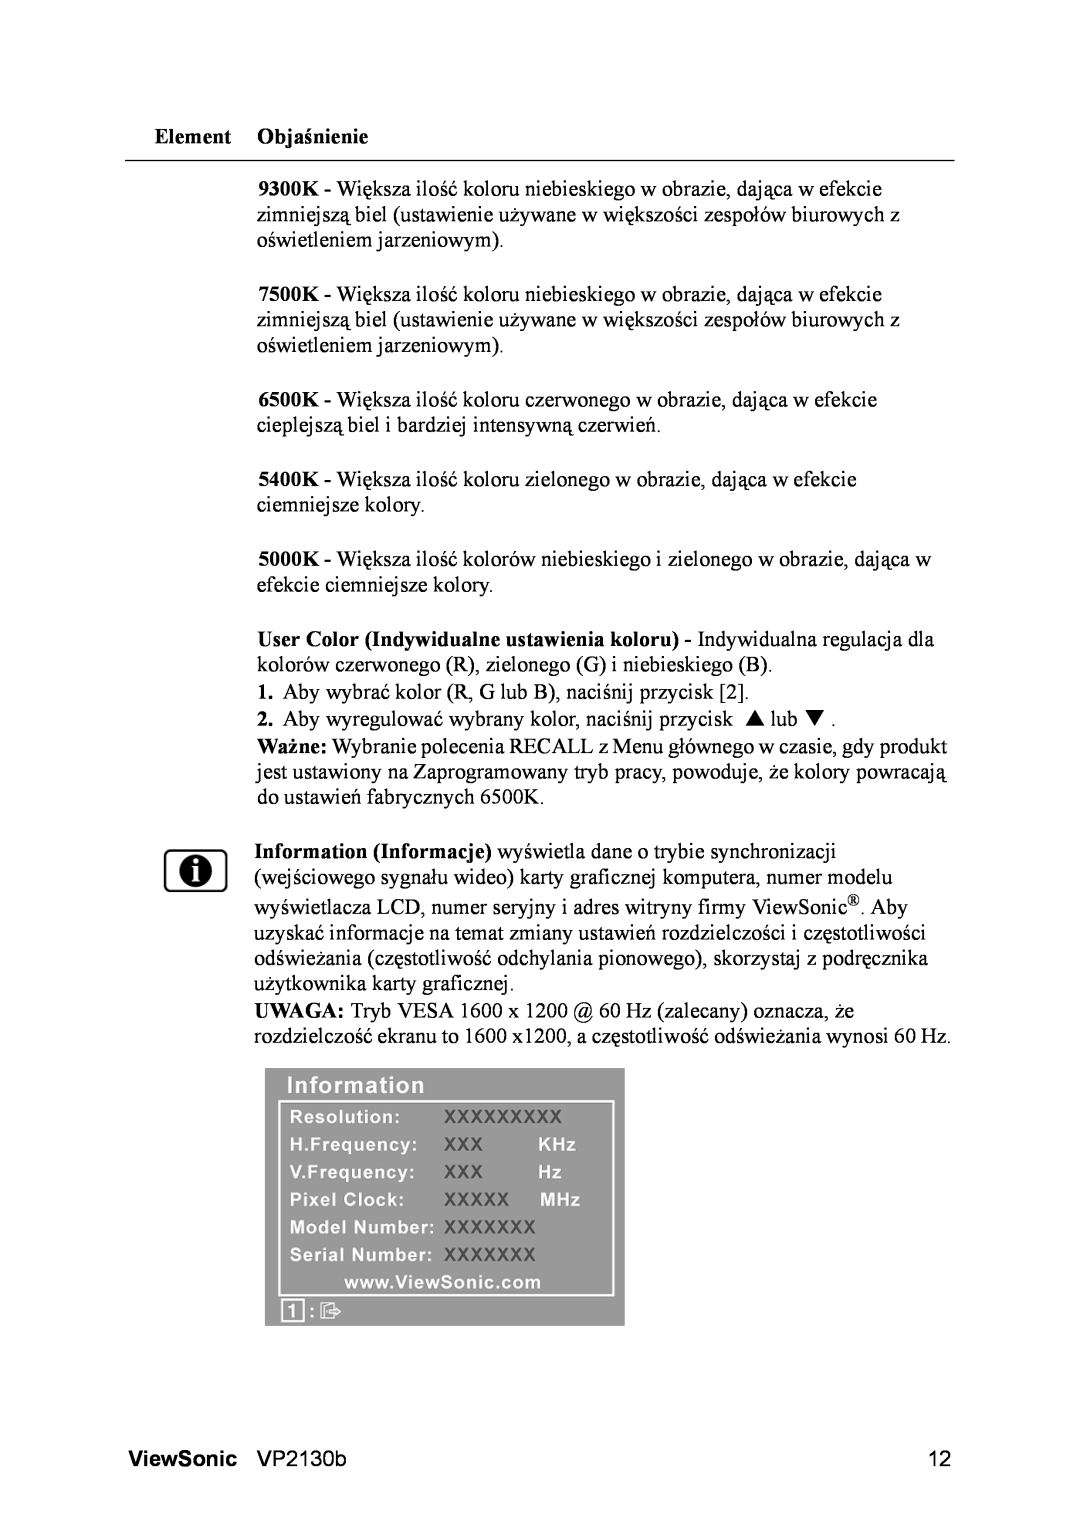 ViewSonic VS10773 manual Element Objaśnienie, ViewSonic VP2130b 